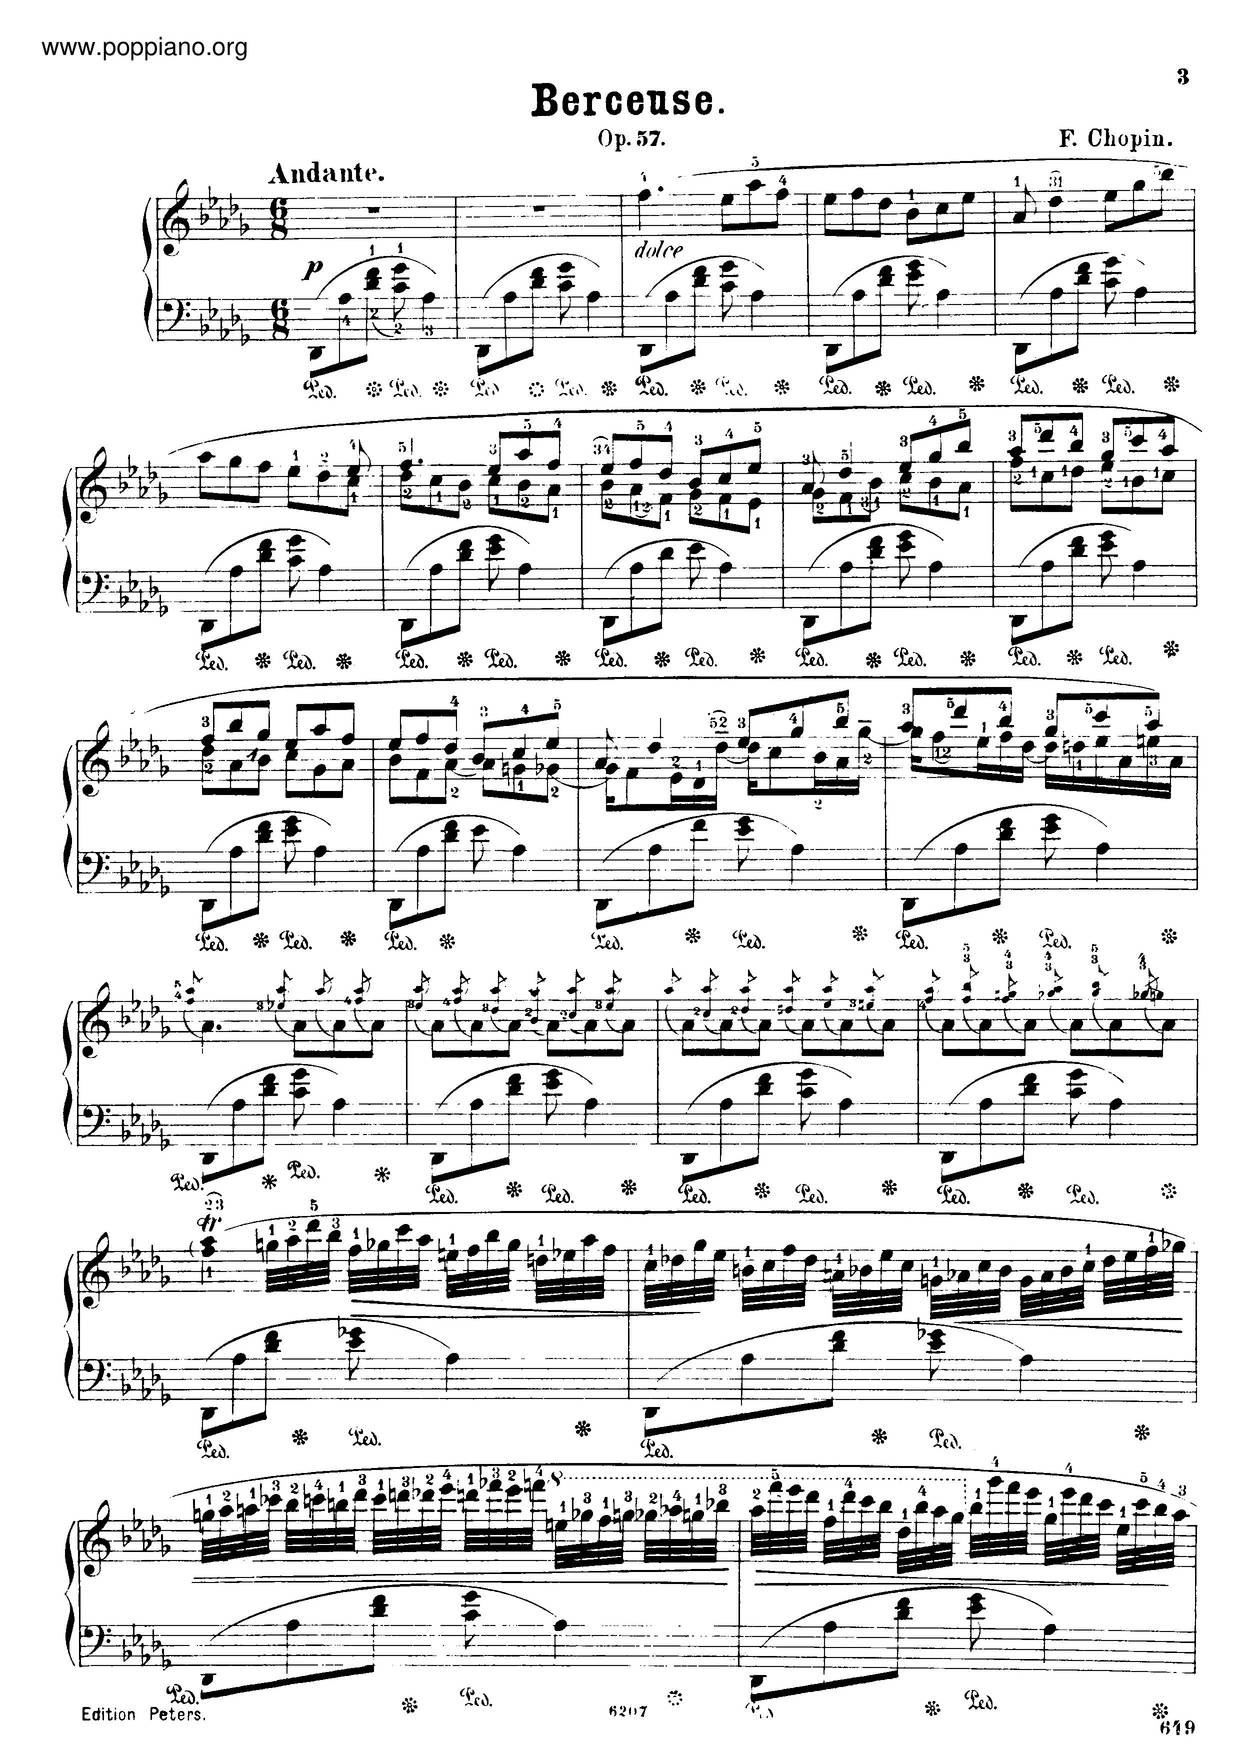 Berceuse, Op. 57ピアノ譜